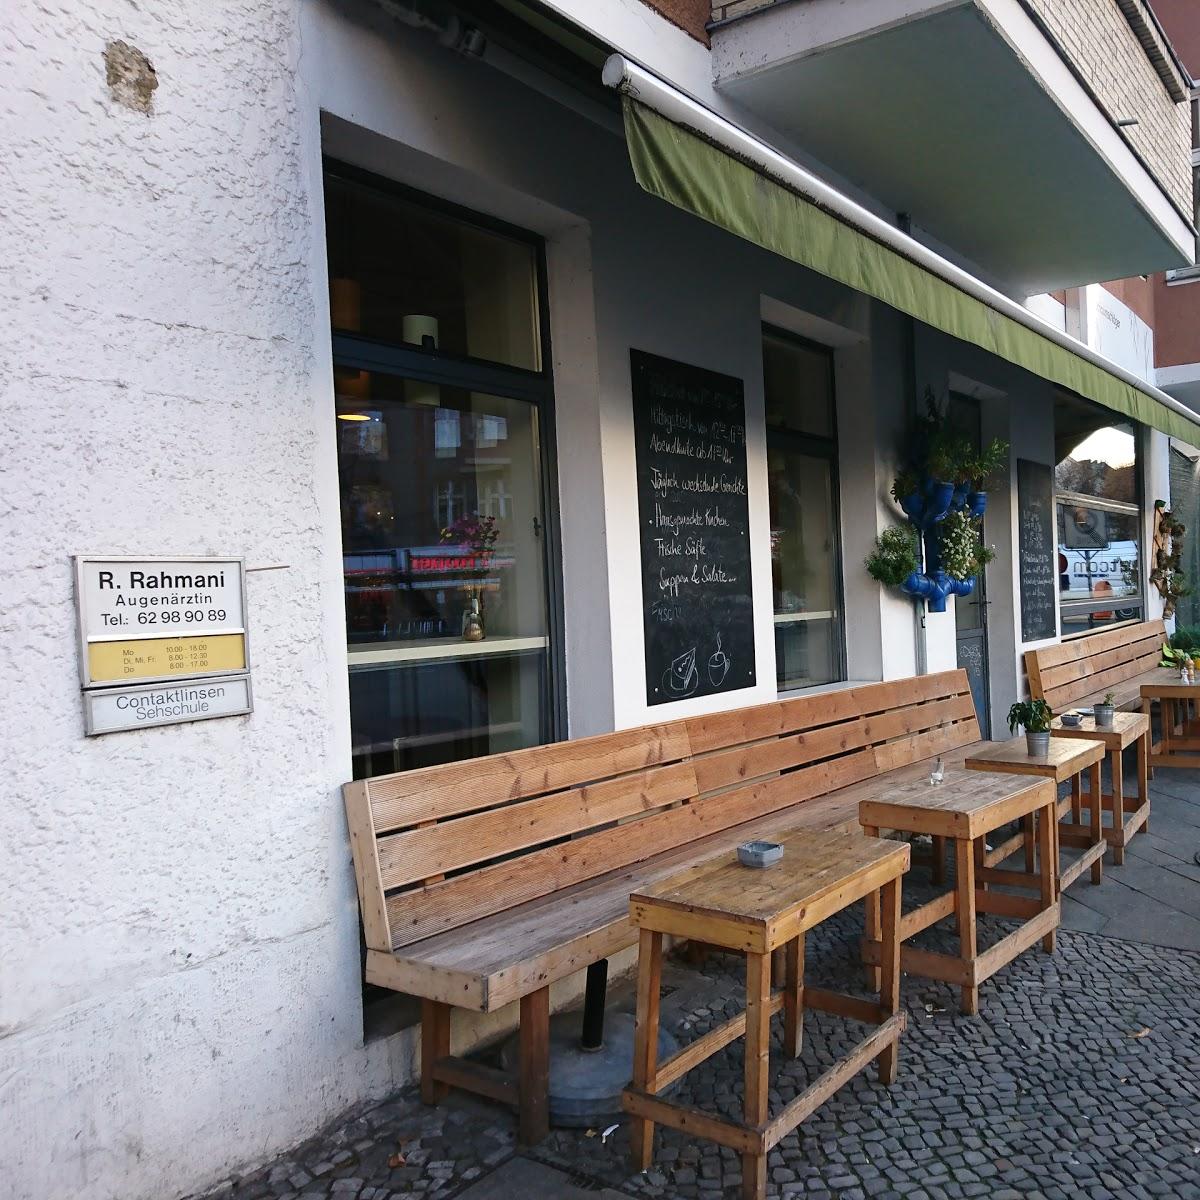 Restaurant "Schaumschläger" in Berlin